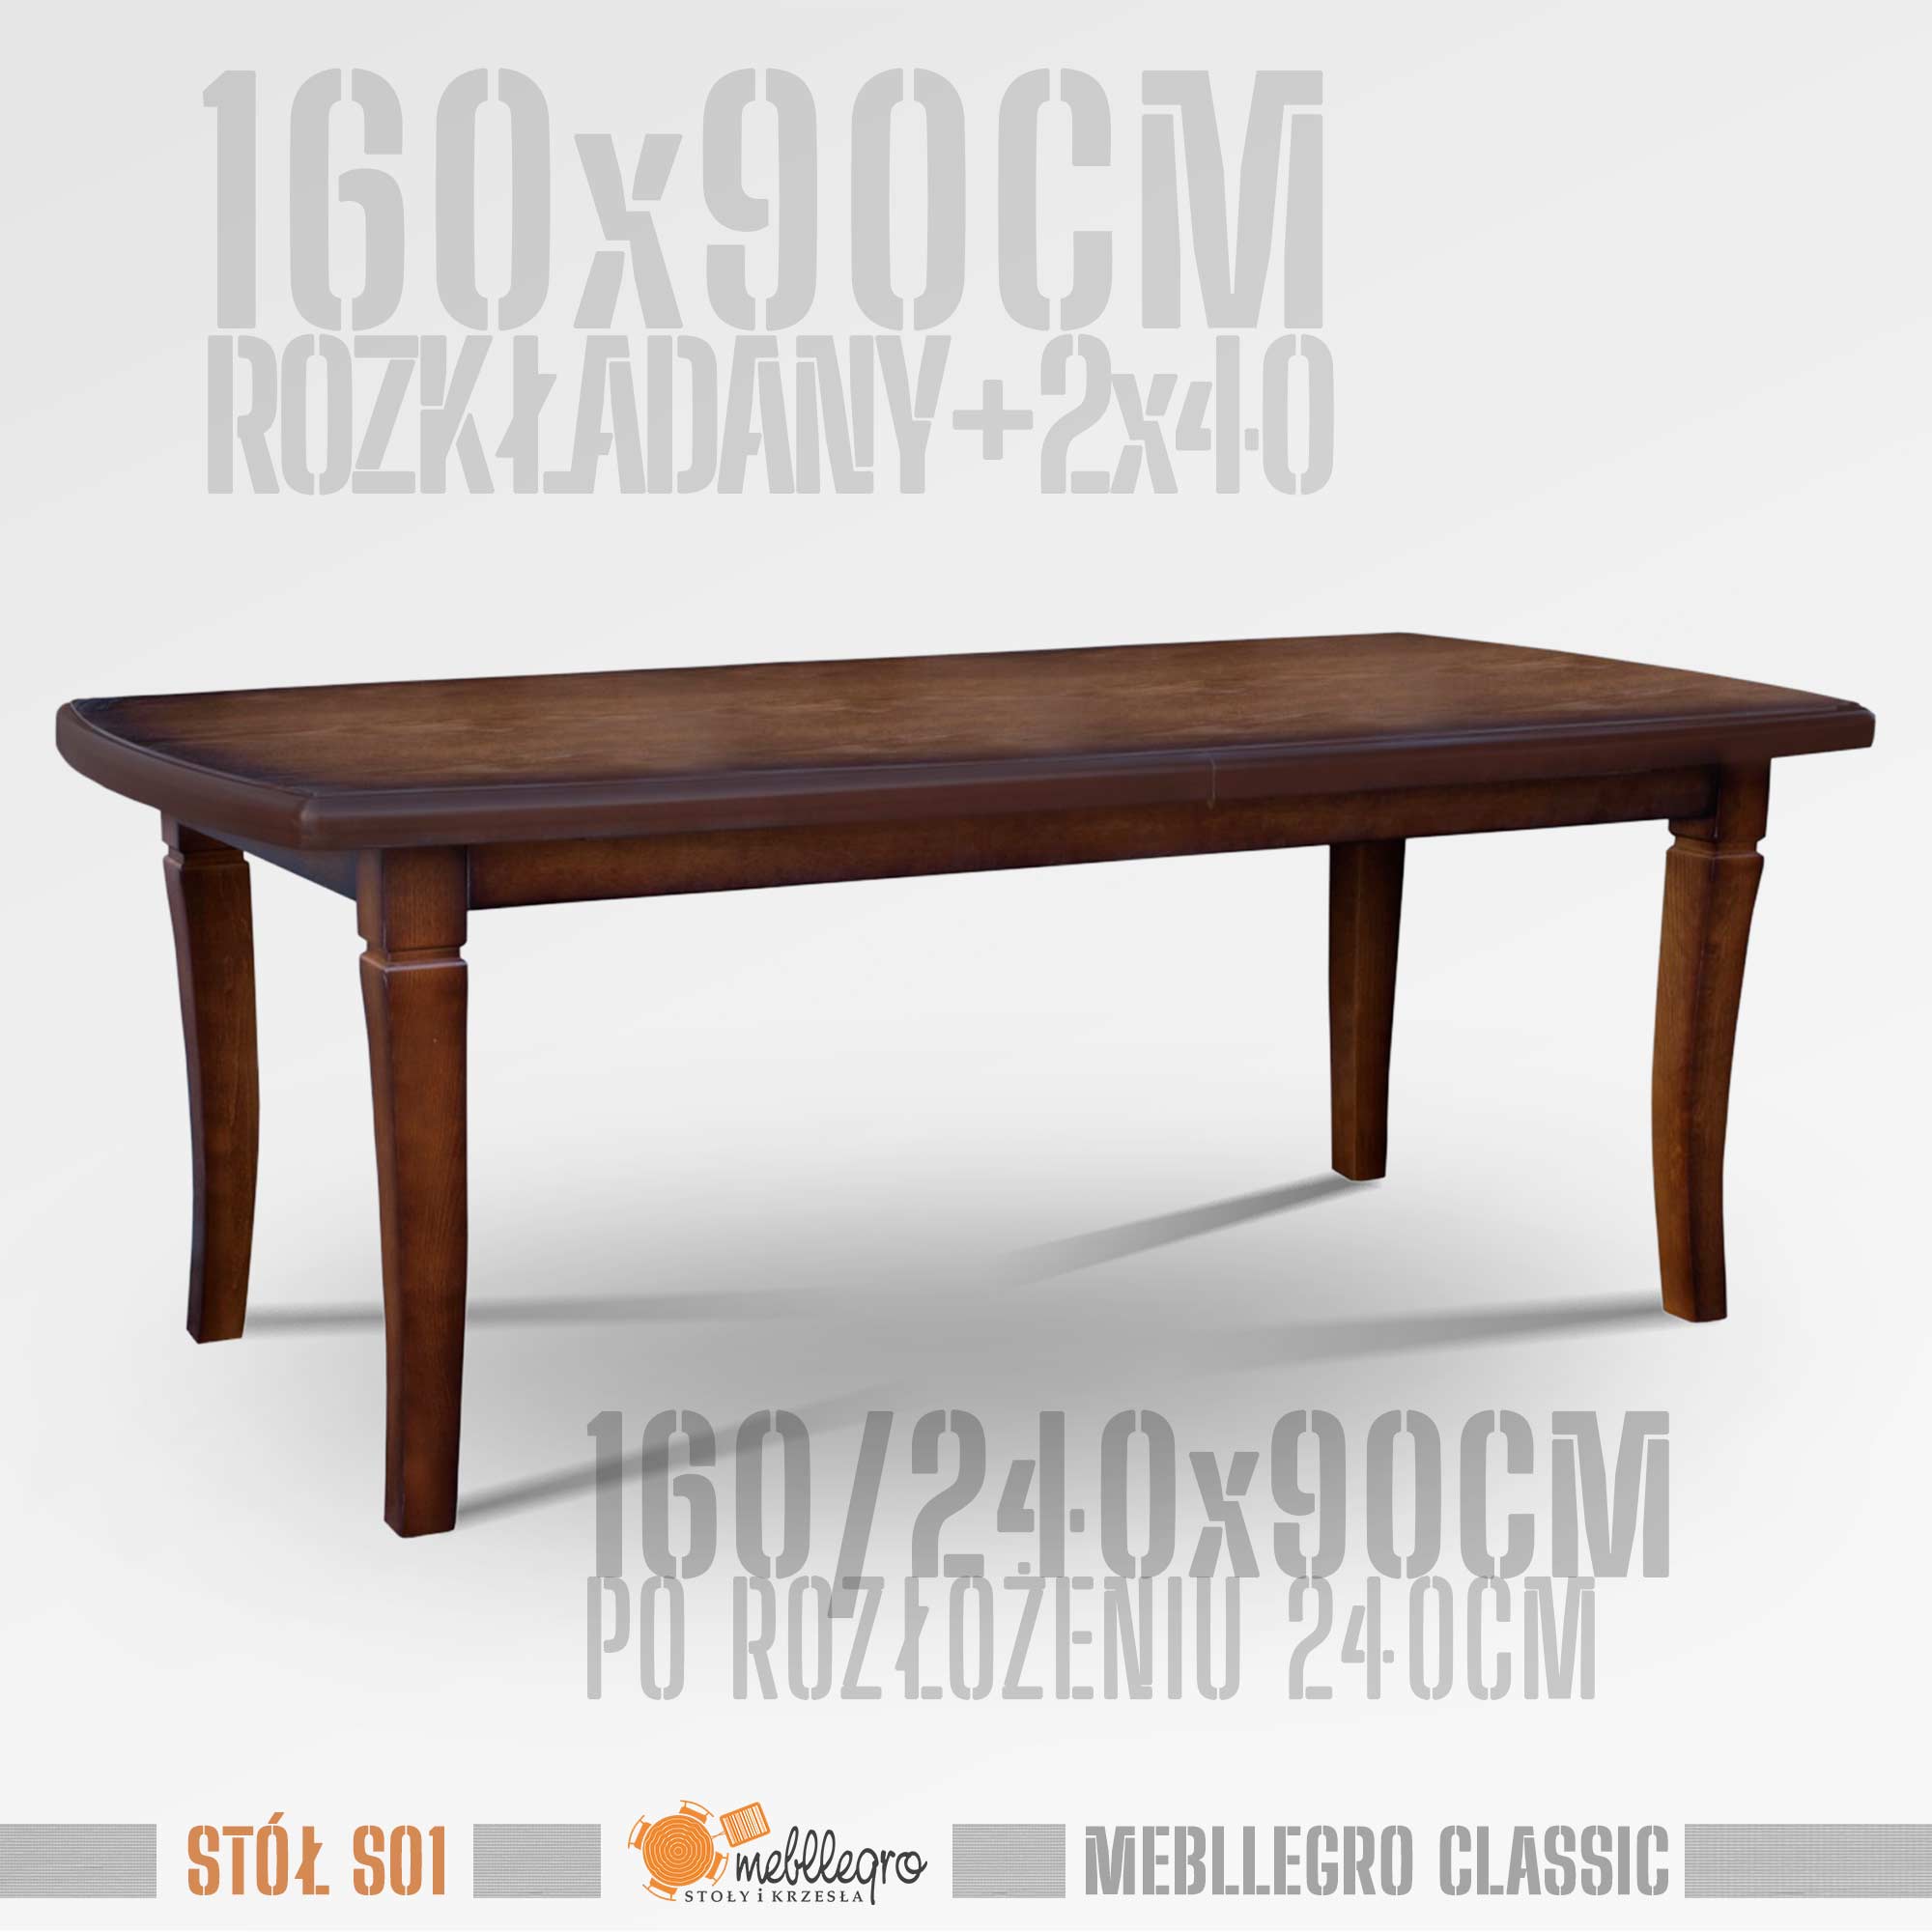 Stół drewniany S01 wymiary stołu 160x90 rozkładany do 240cm / MEBLLEGRO CLASSIC